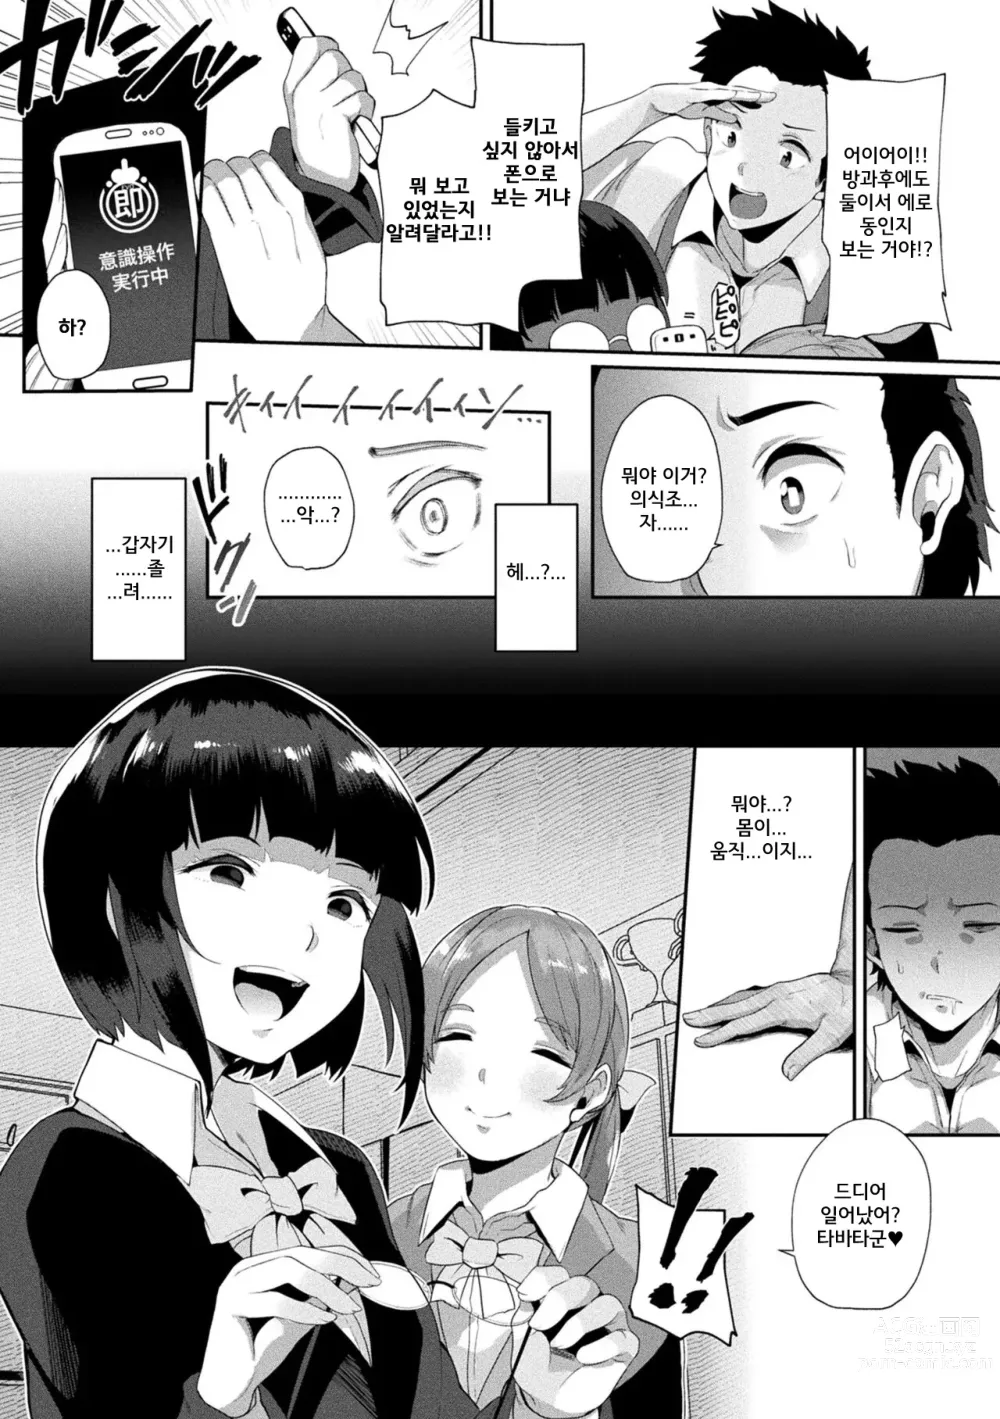 Page 7 of manga Jintai kaizou apuri soku ebo ga-ruzu ribenji-hen